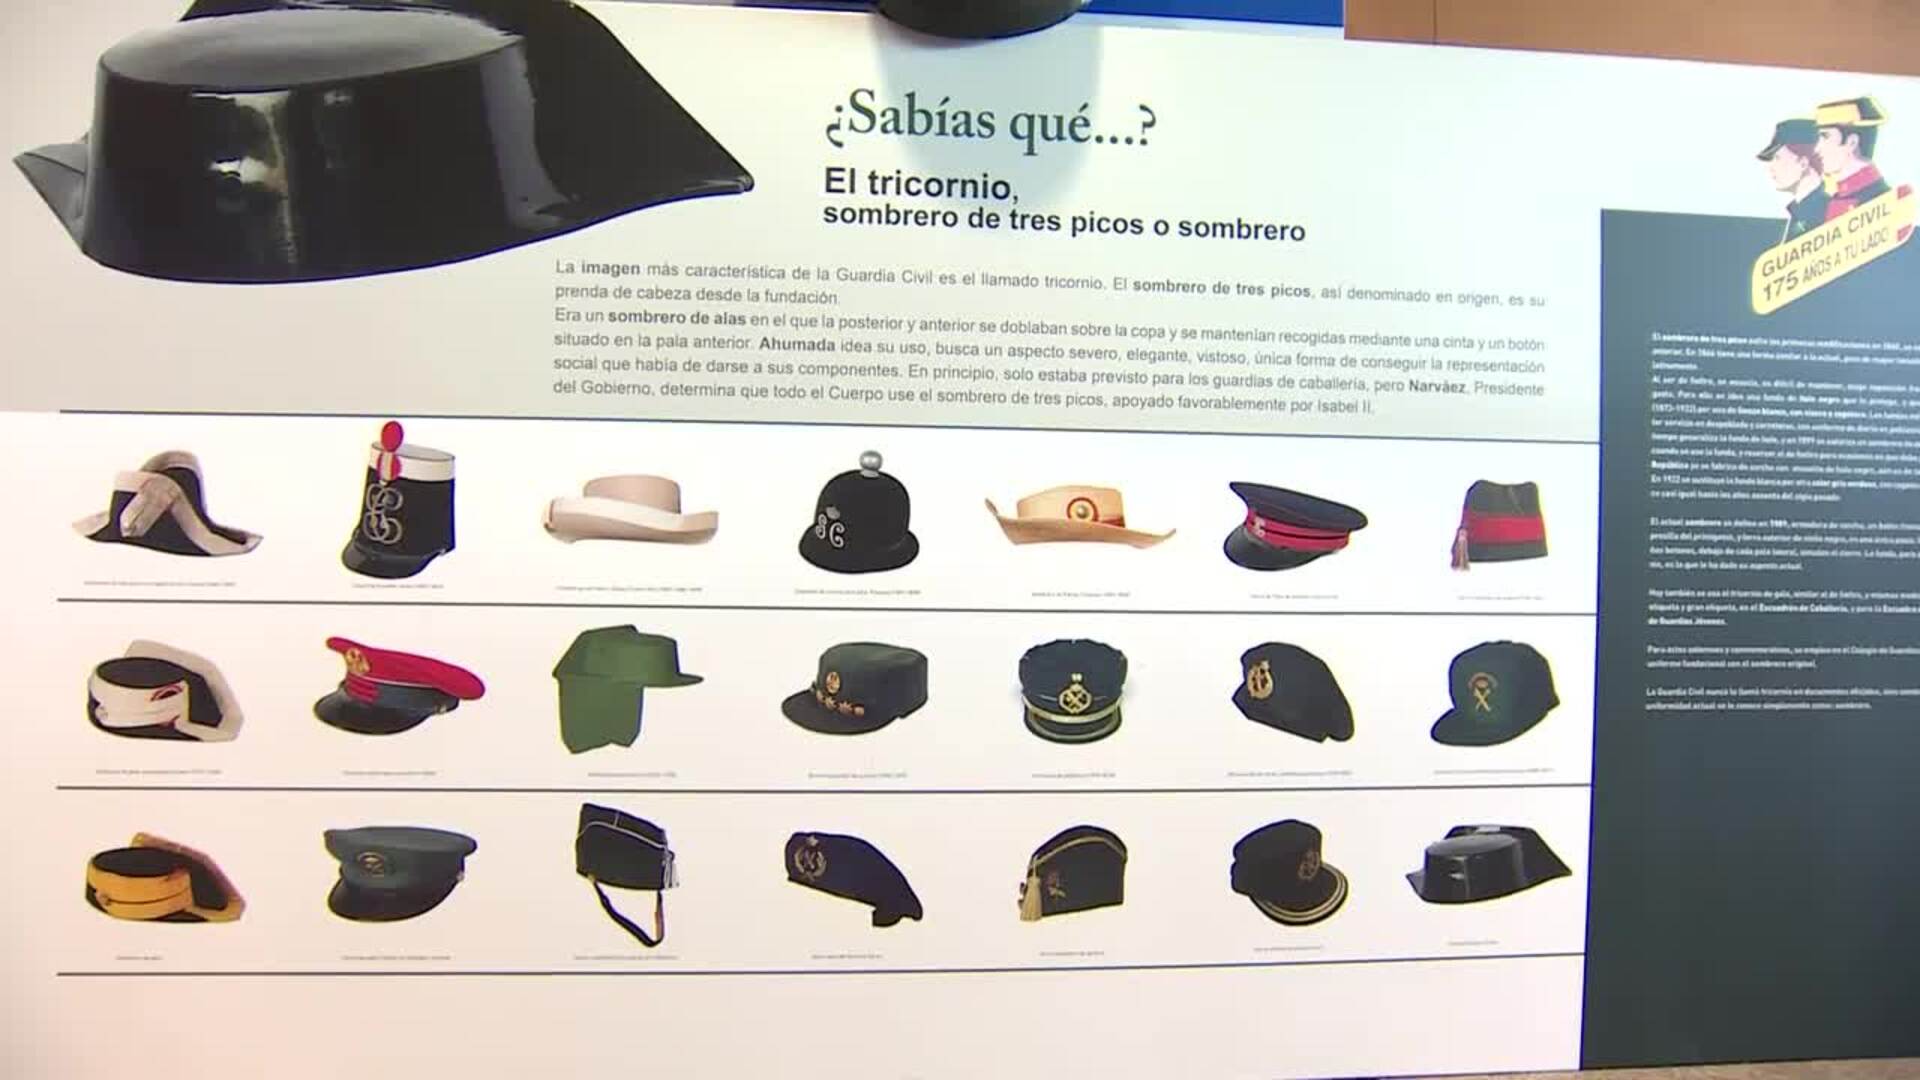 La historia de la Guardia Civil, encapsulada en una exposición en el World Trade Center de Barcelona